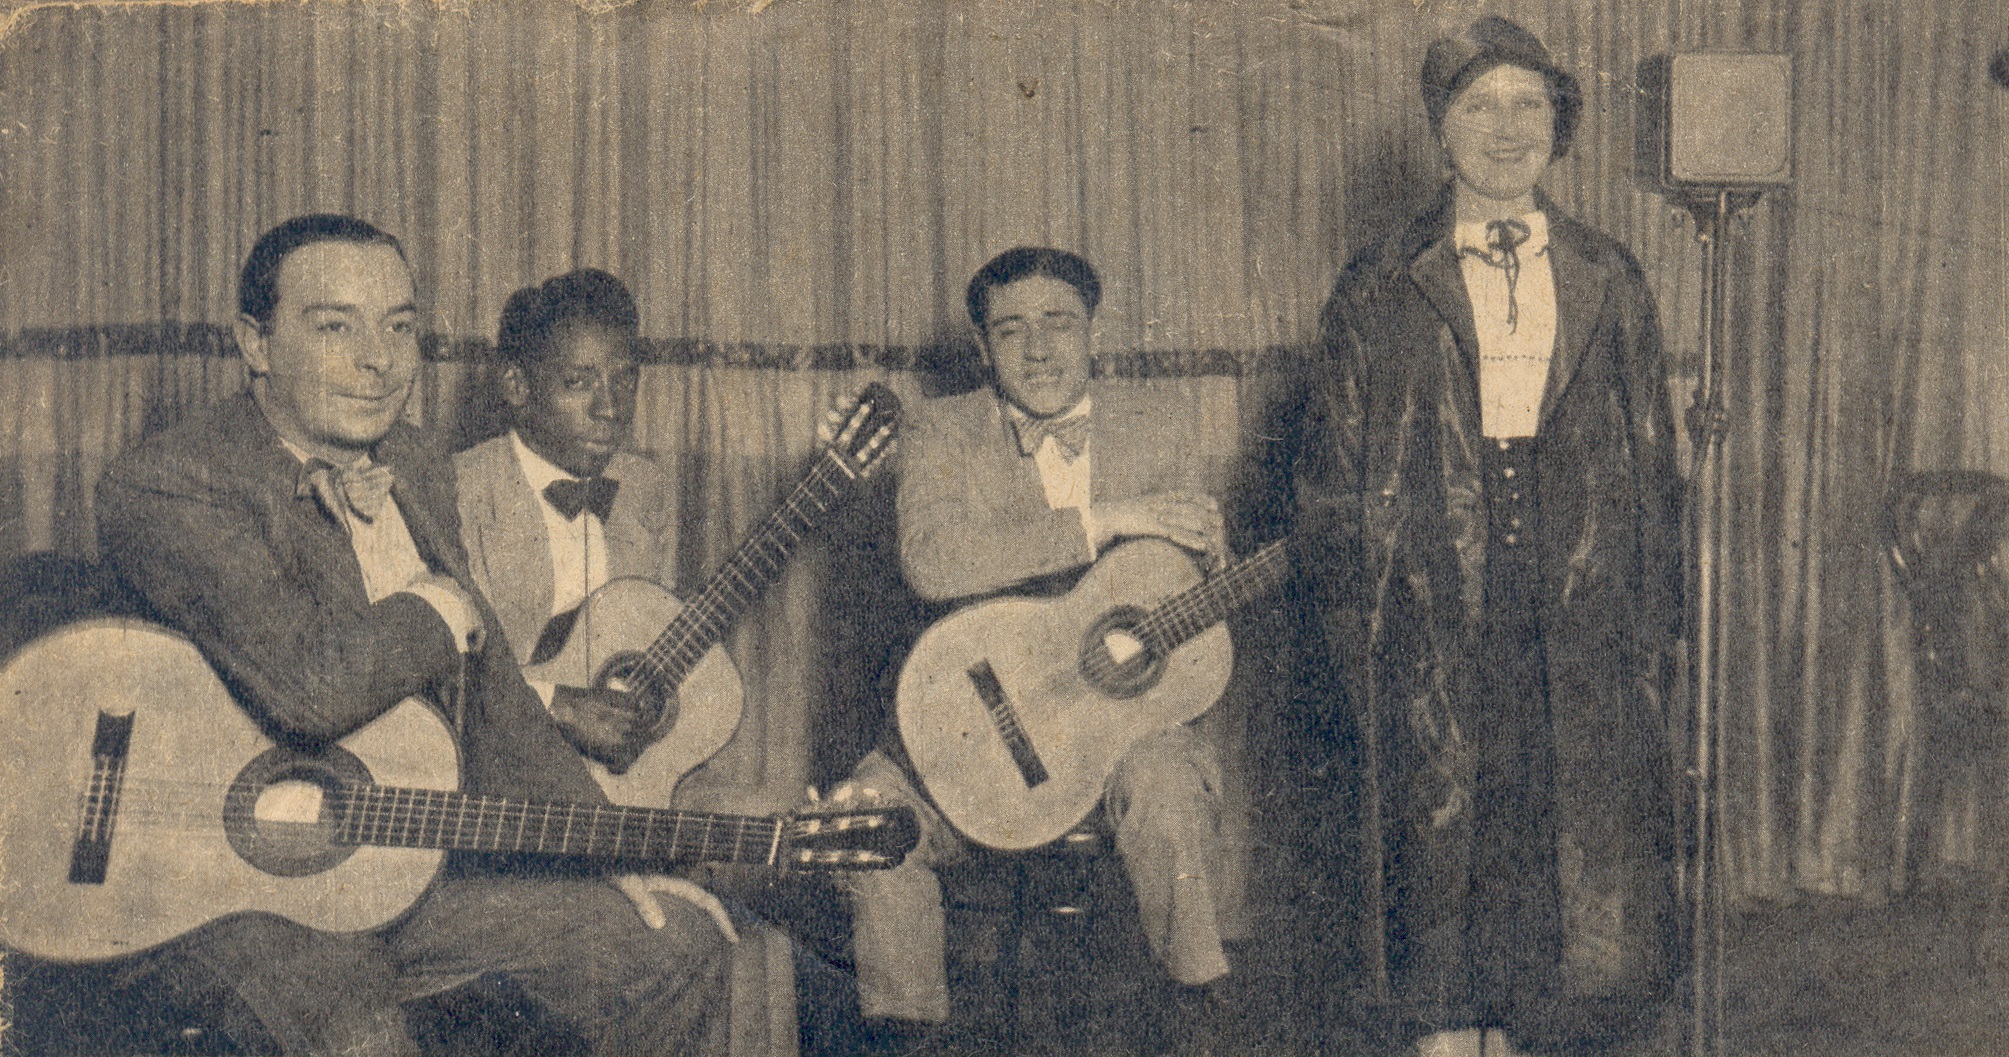 (Gregorio Urbano “Sotí” Rivero (1899-1949), afroporteño compositor de tango y guitarrista. Fotografía de una revista porteña no identificada, s/a).